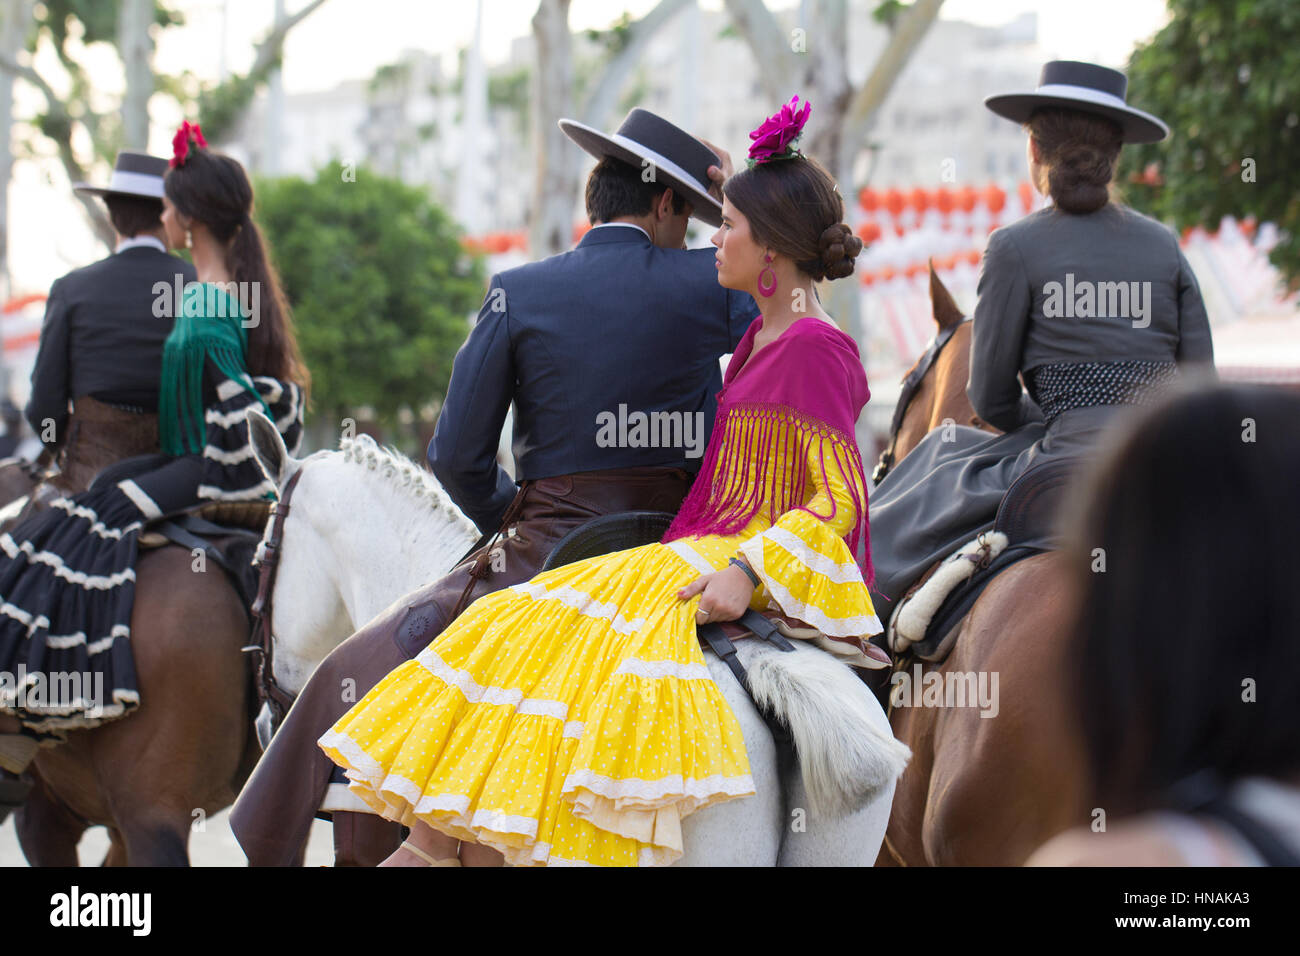 Sevilla, España - APR, 25: personas vestidas en trajes tradicionales en caballo en la Feria de Abril de Sevilla, 25 de abril de 2014 en Sevilla, España. Foto de stock